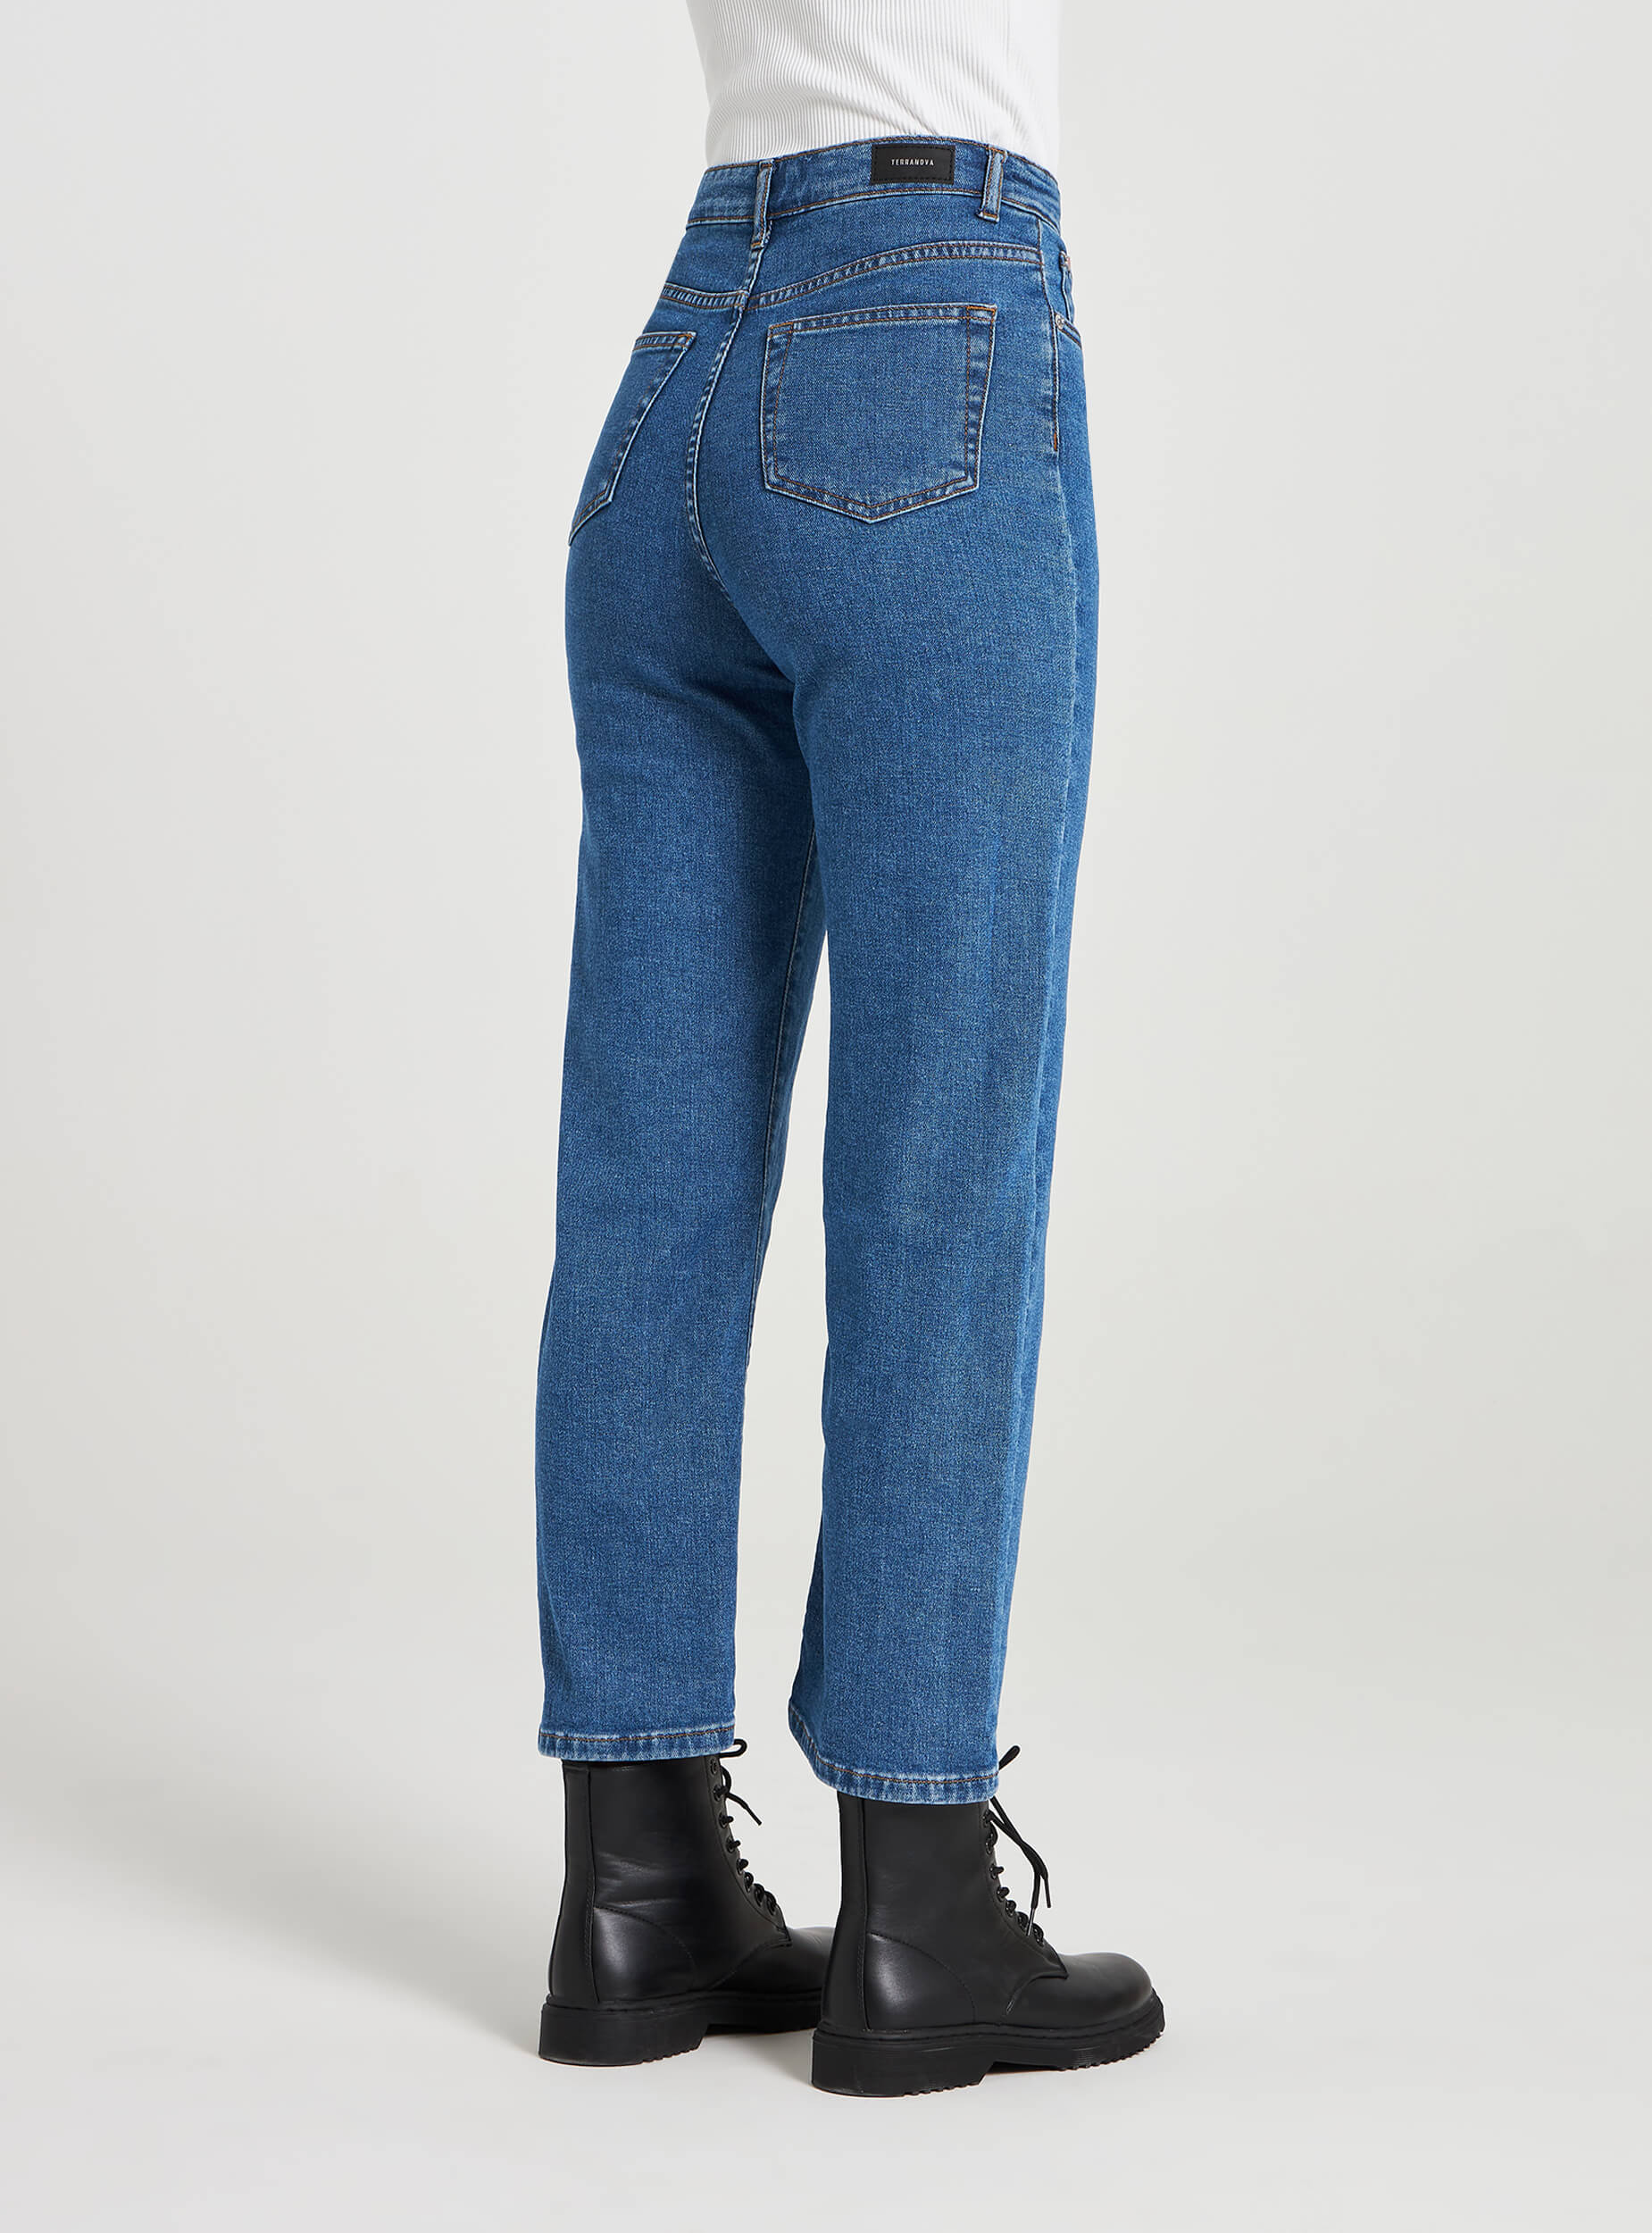 high waist jeans online shopping